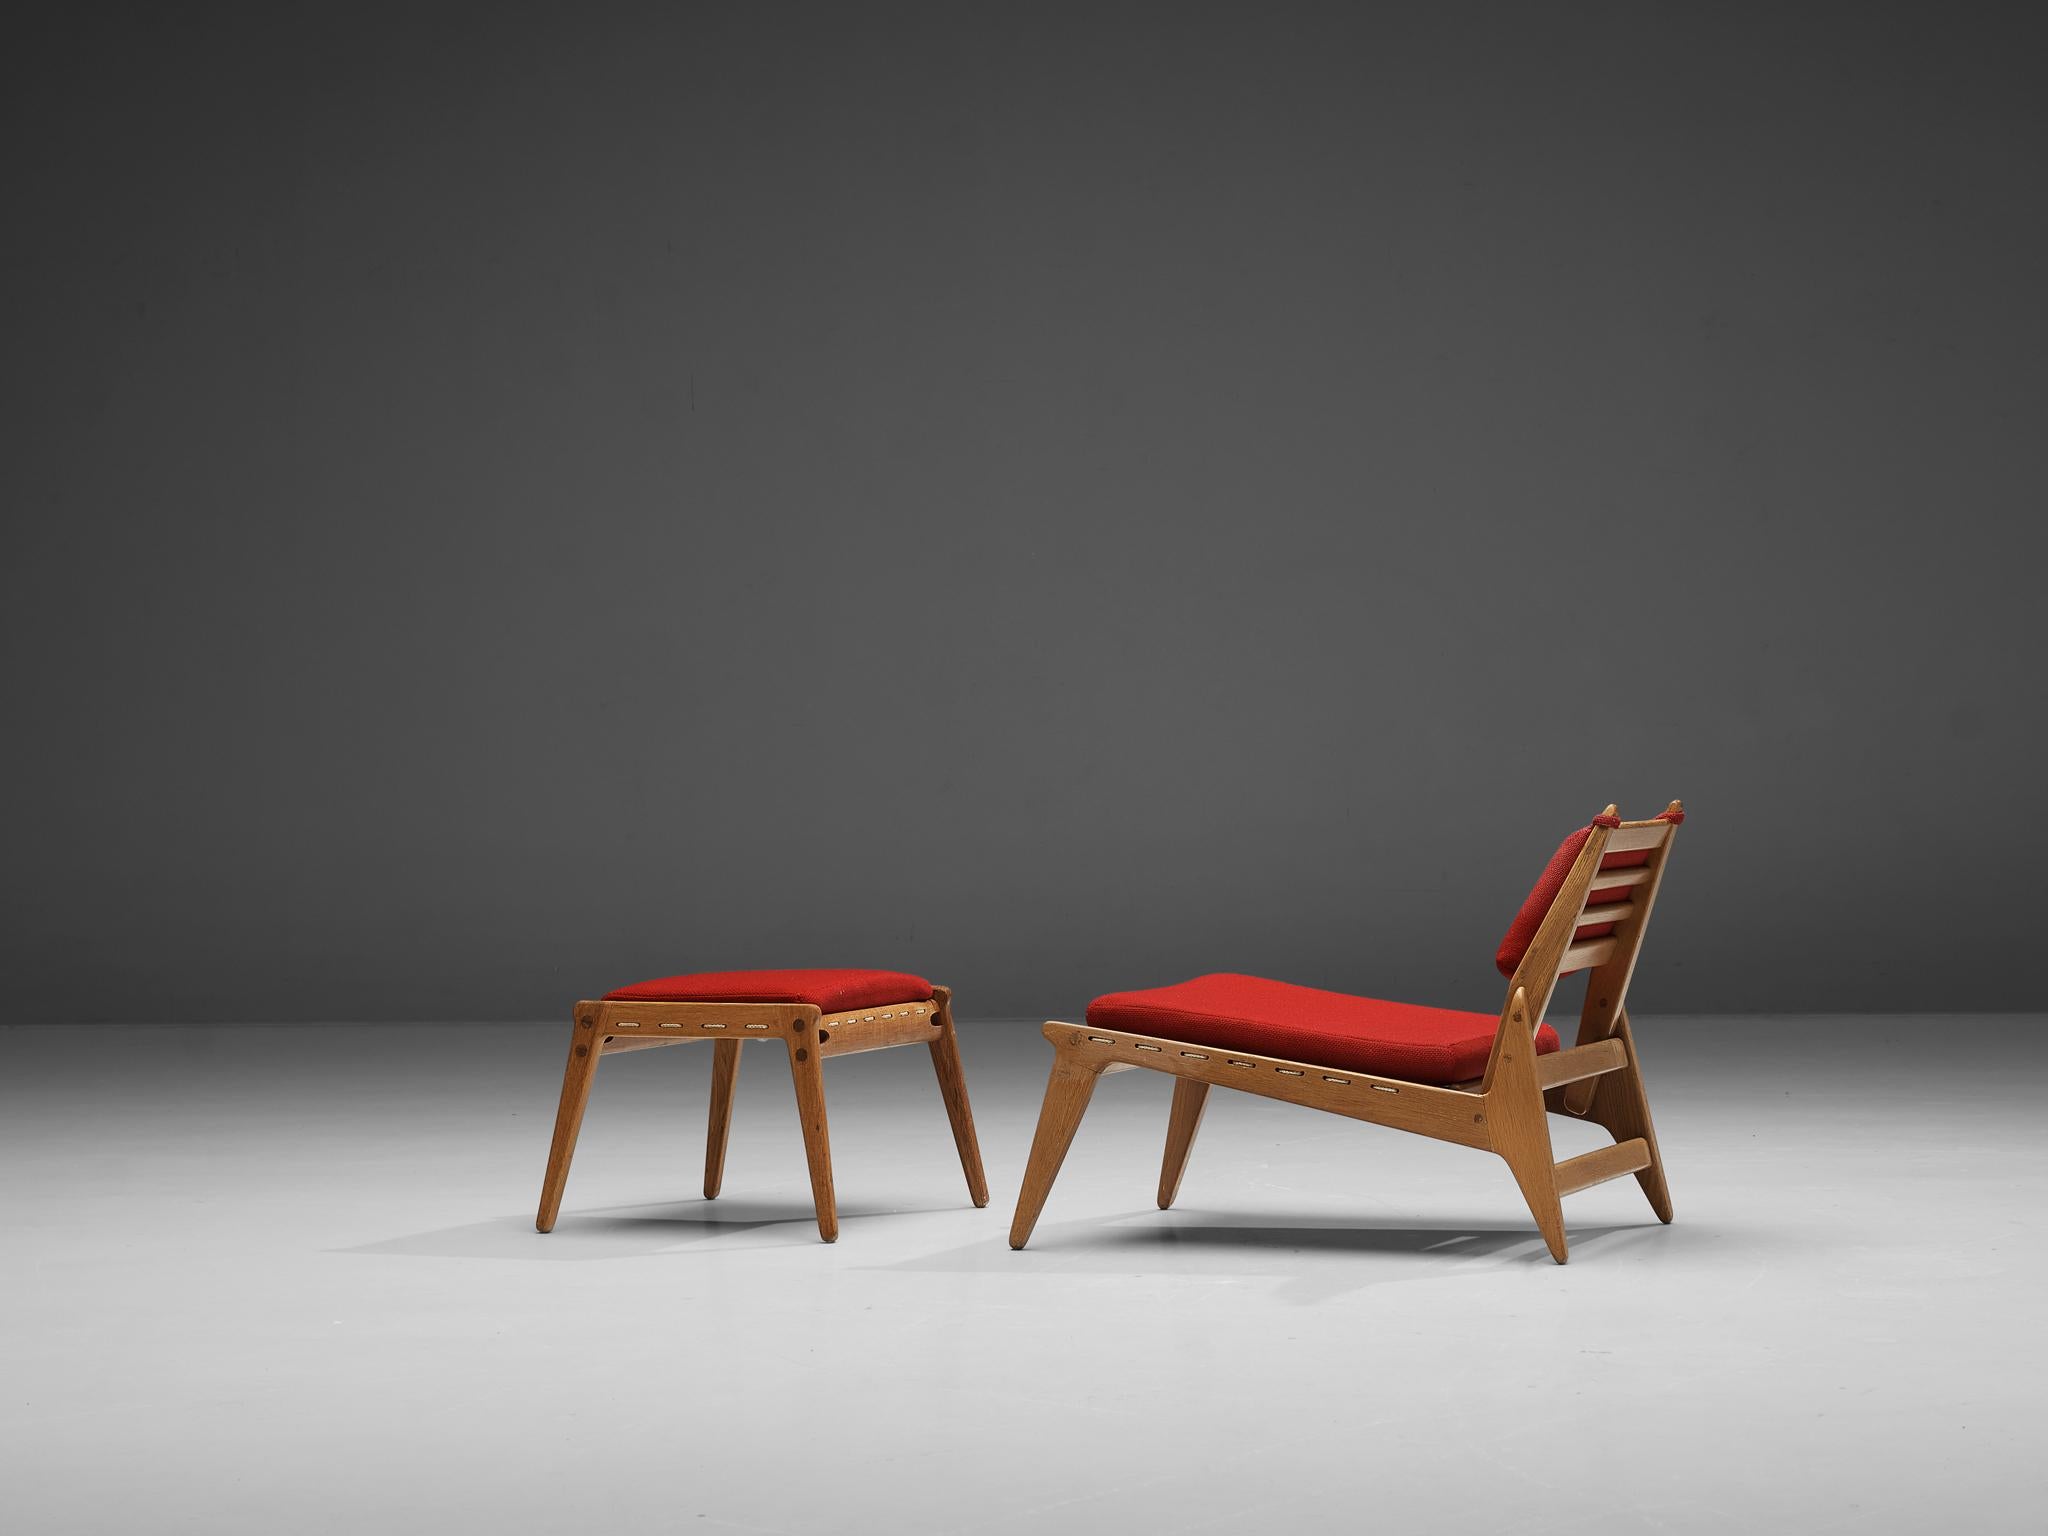 Hunting Lounge Chair mit Ottomane, Eiche, Seil, Stoff, Deutschland, 1960er Jahre

Dieser entspannende Sessel besticht durch sein minimalistisches Design in Verbindung mit einer großartigen Holzverarbeitung. Durch die hohen Beine und den Rücken wird